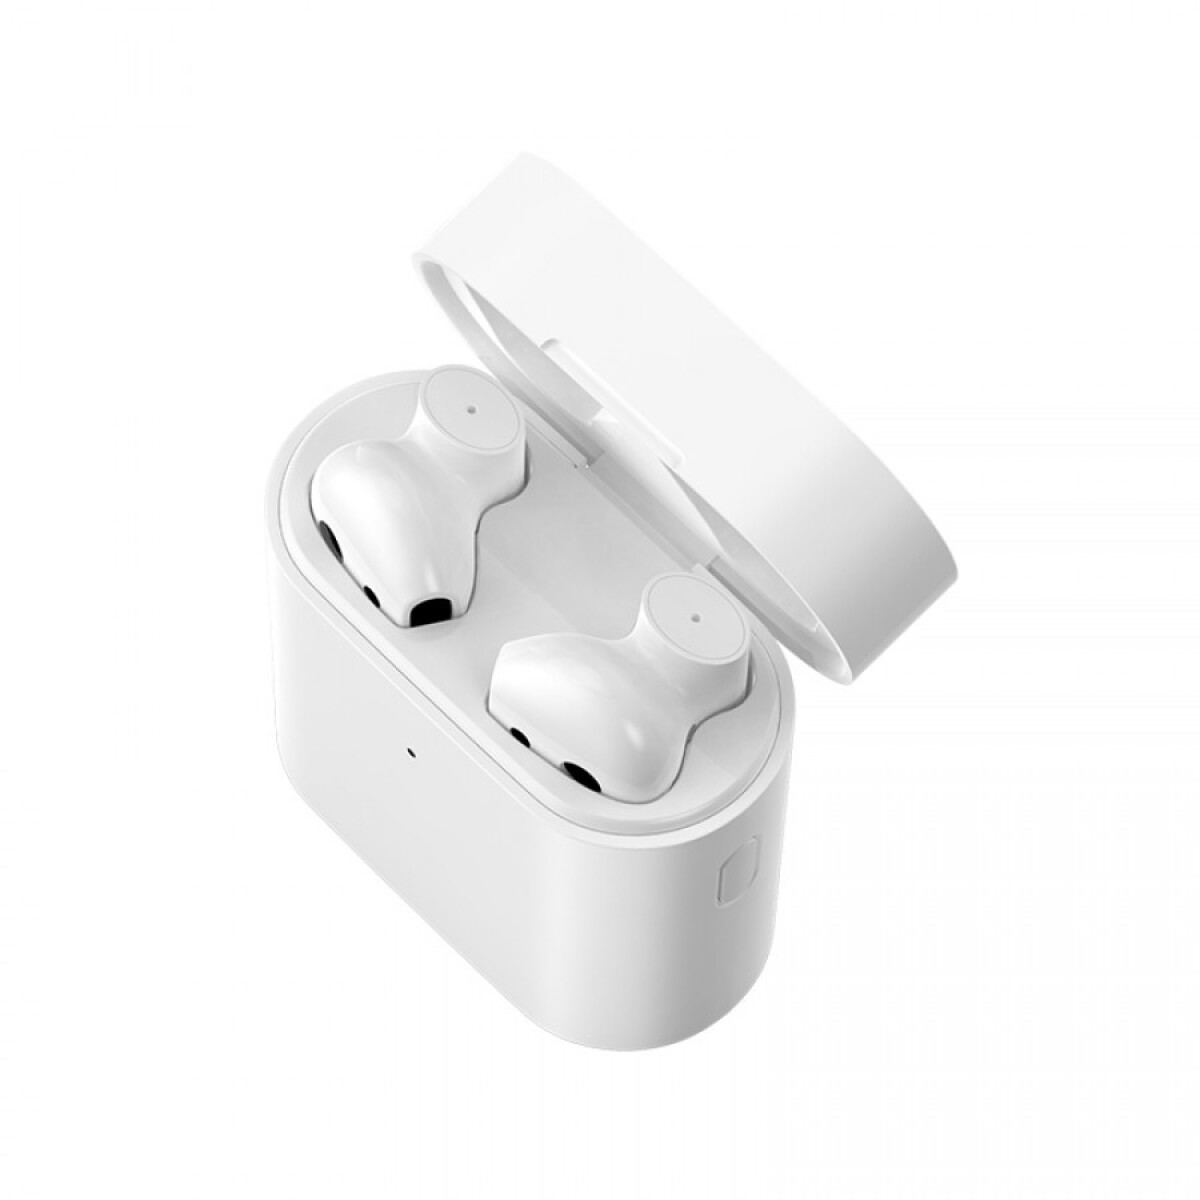 Mi true wireless earphones 2s white - White 